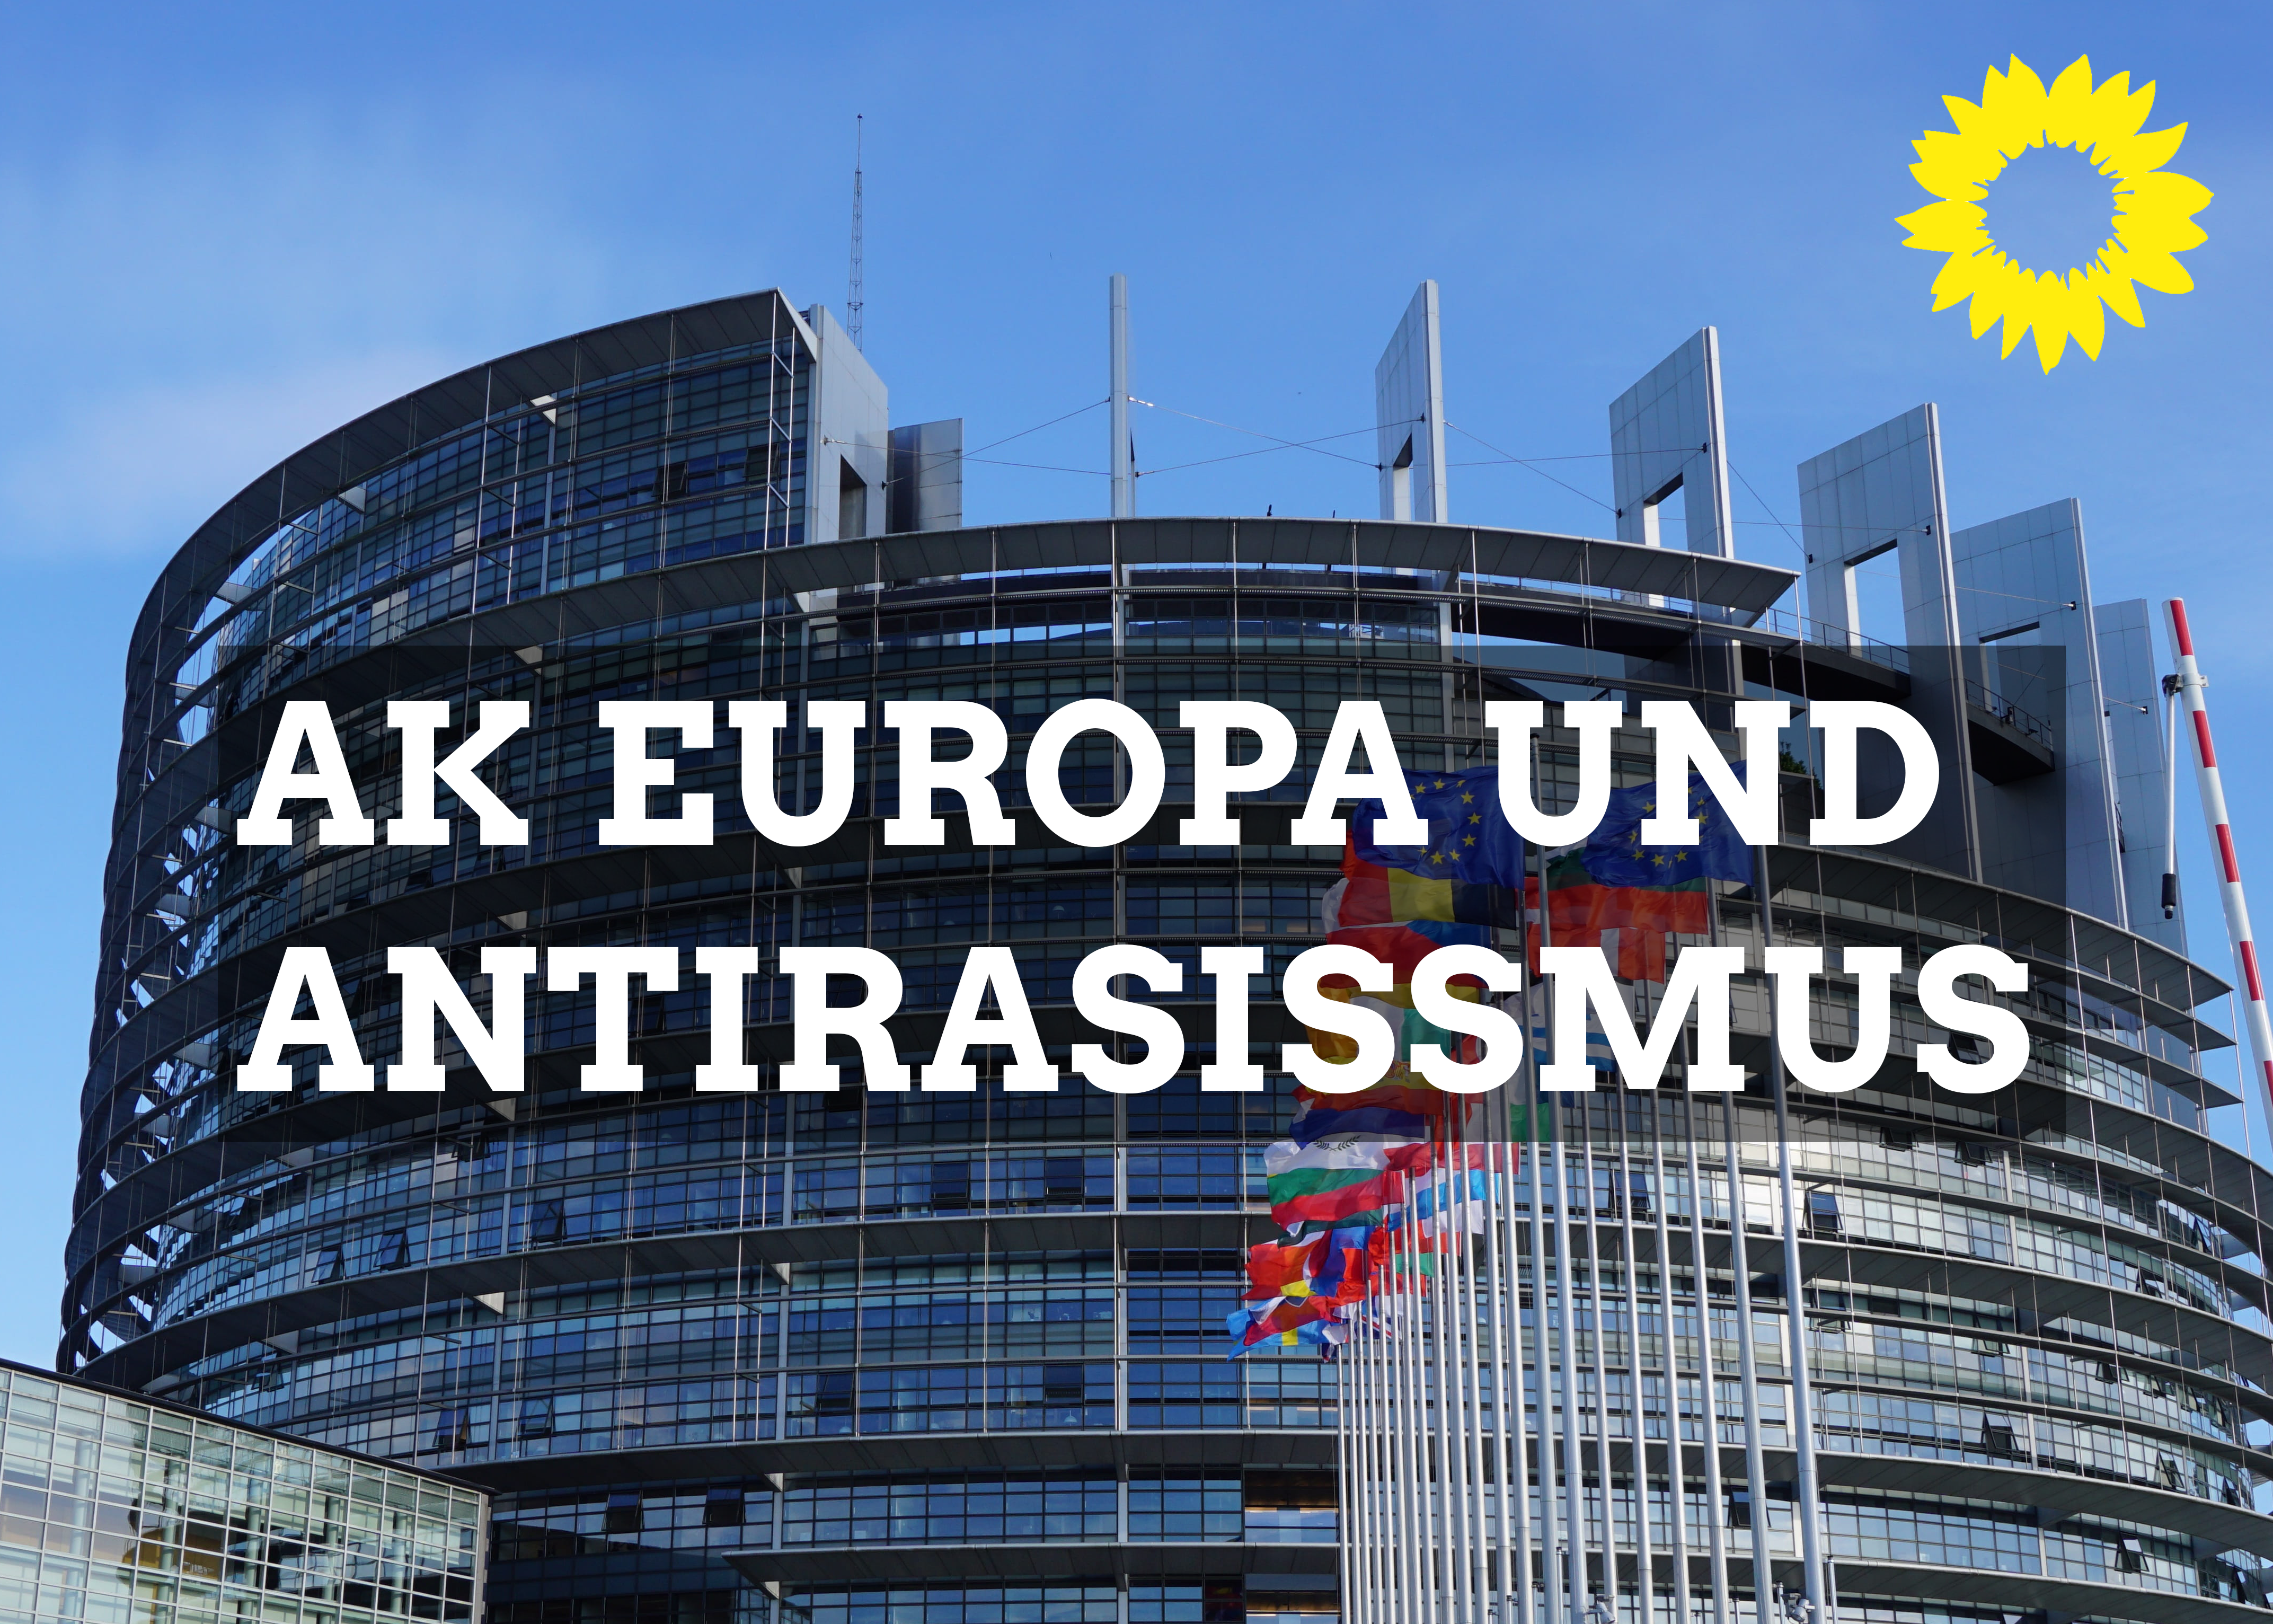 im Hintergrund das EU-Parlament in Straßburg, rechts oben das Logo von Bündnis 90 / Die Grünen, der Kranz einer gelben Sonnenblume, die Aufschrift lautet AK Europa und Antirassismus